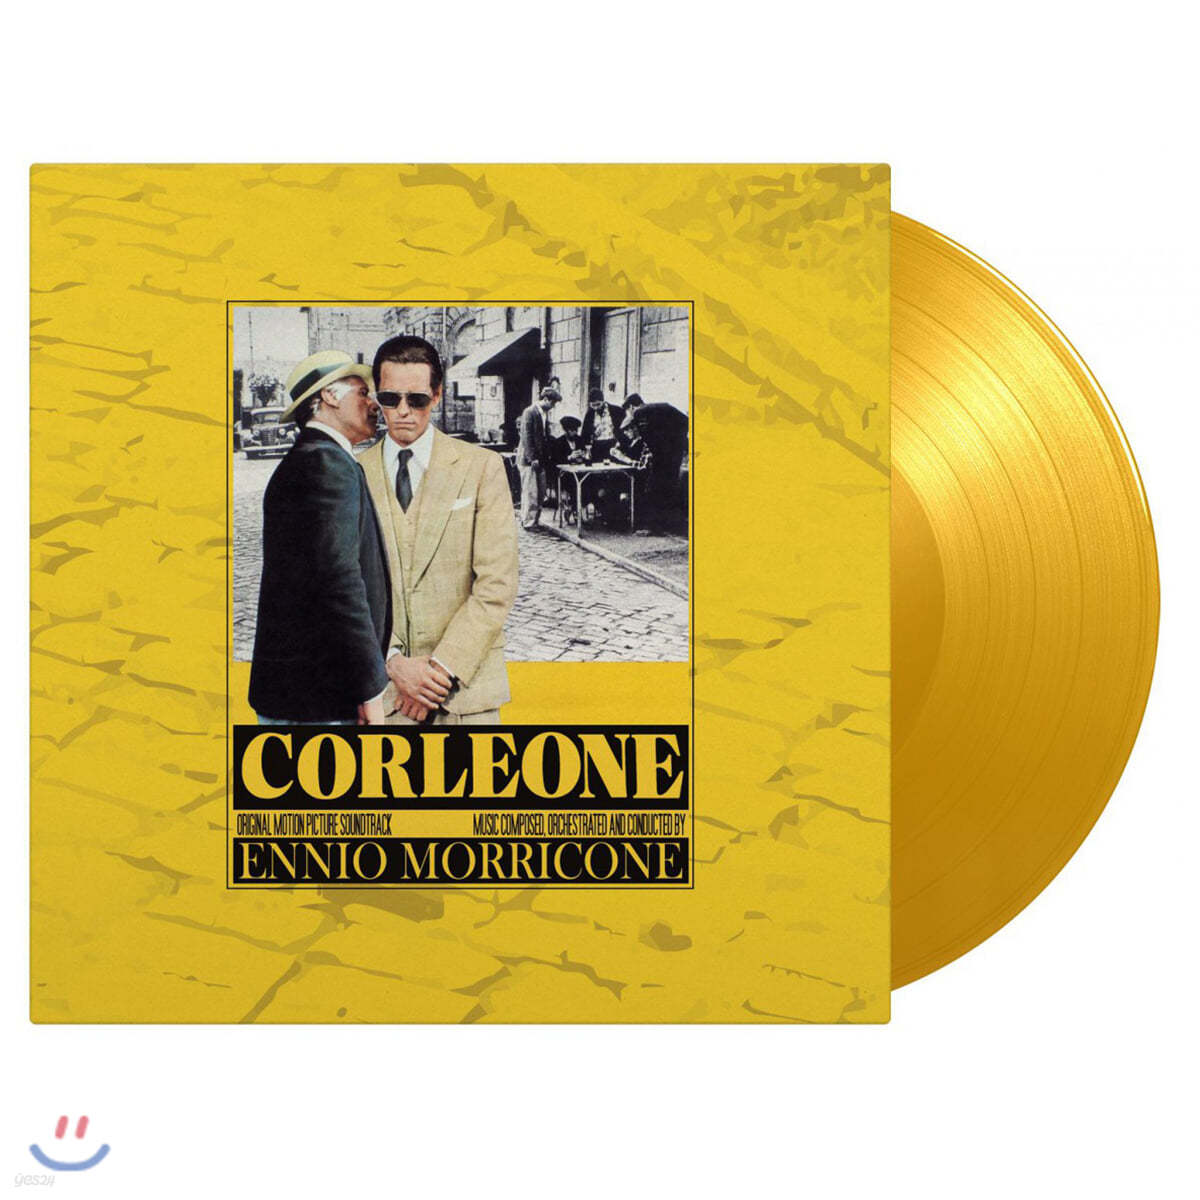 최후의 시실리 영화음악 (Corleone OST by Ennio Morricone 엔니오 모리꼬네) [옐로우 컬러 LP]